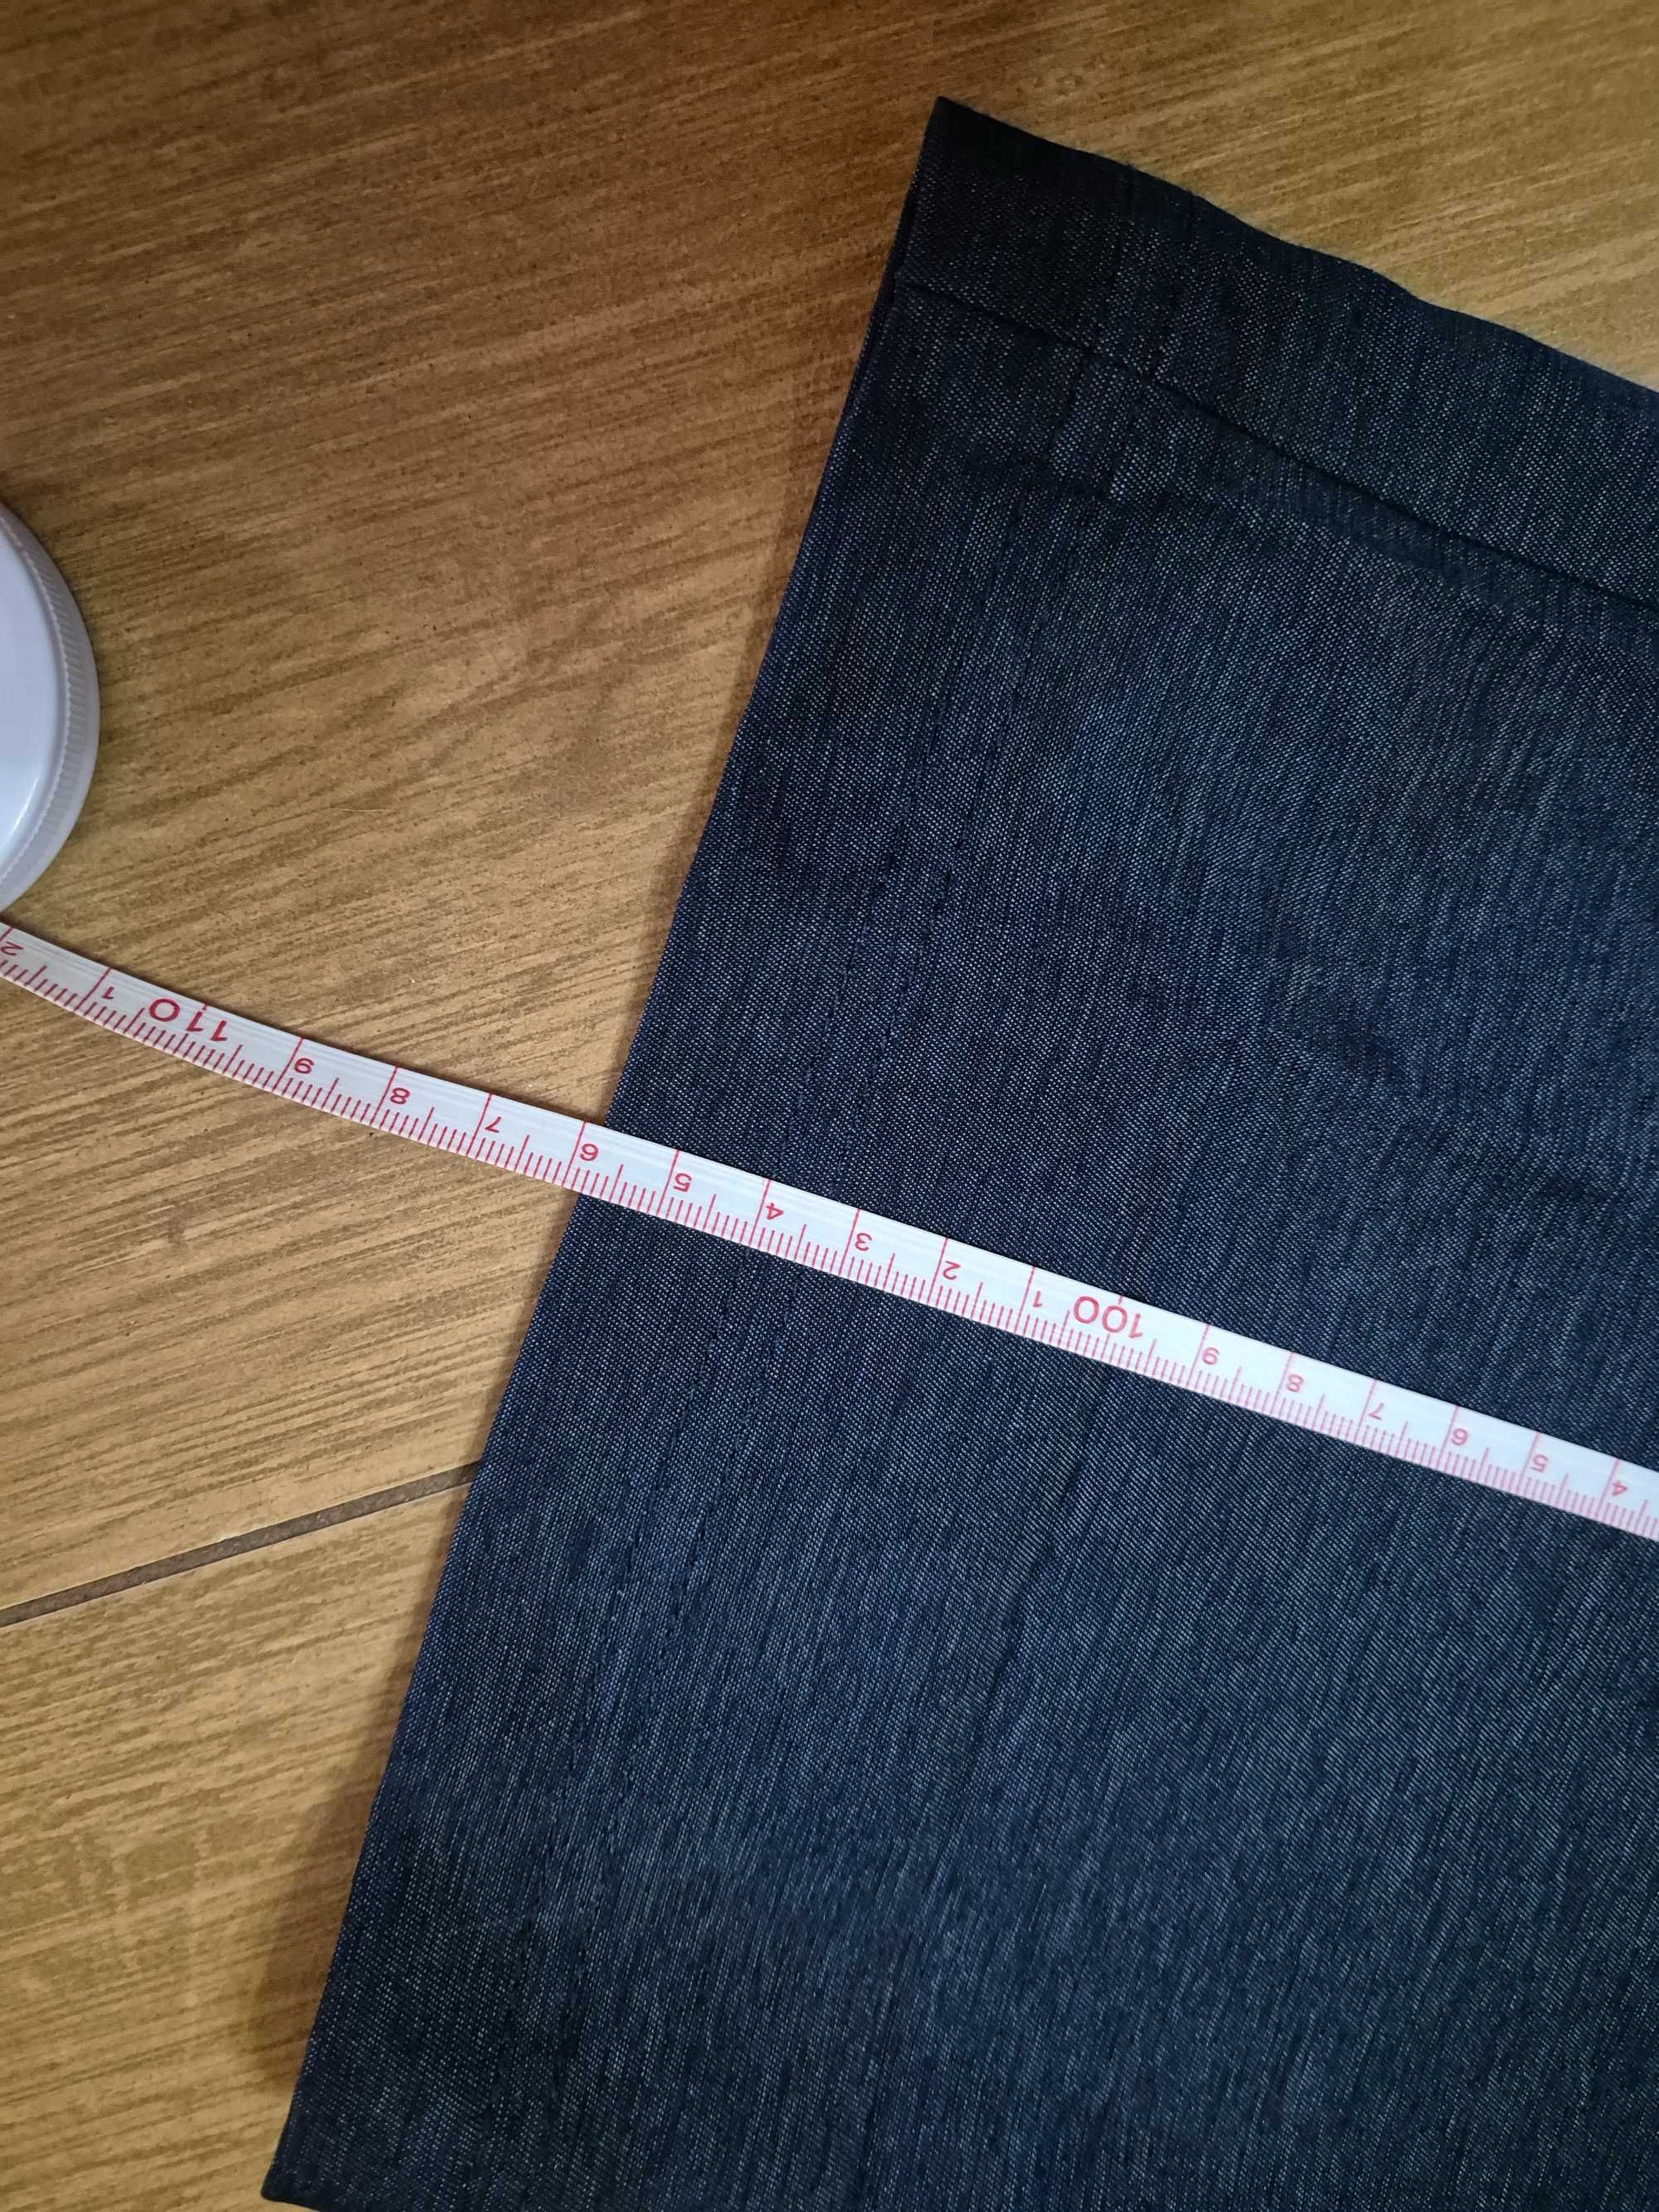 Duże spodnie 2XL z USA Koi denim jak jeansy nowe warte 235 zł okazja